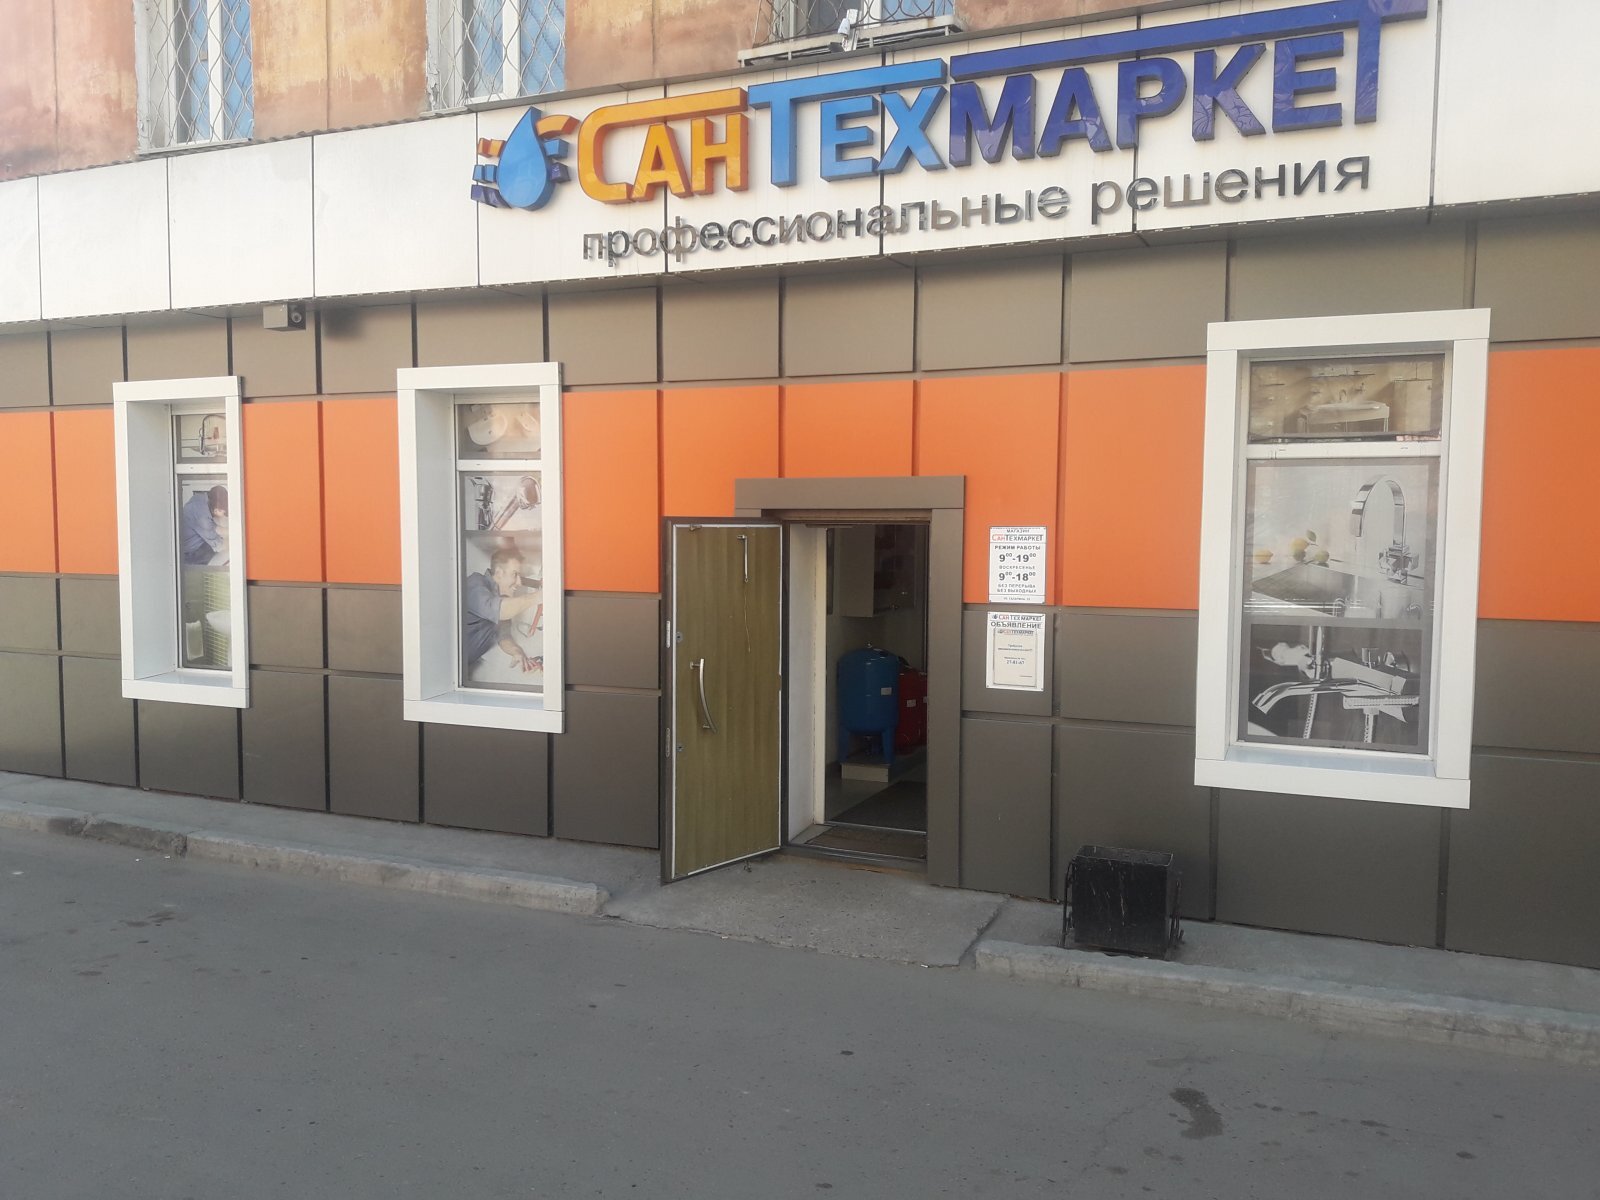 Магазины электротехнической продукции в Улан-Удэ рядом со мной, 74 магазина  на карте города, 432 отзыва, фото, рейтинг магазинов электрики – Zoon.ru